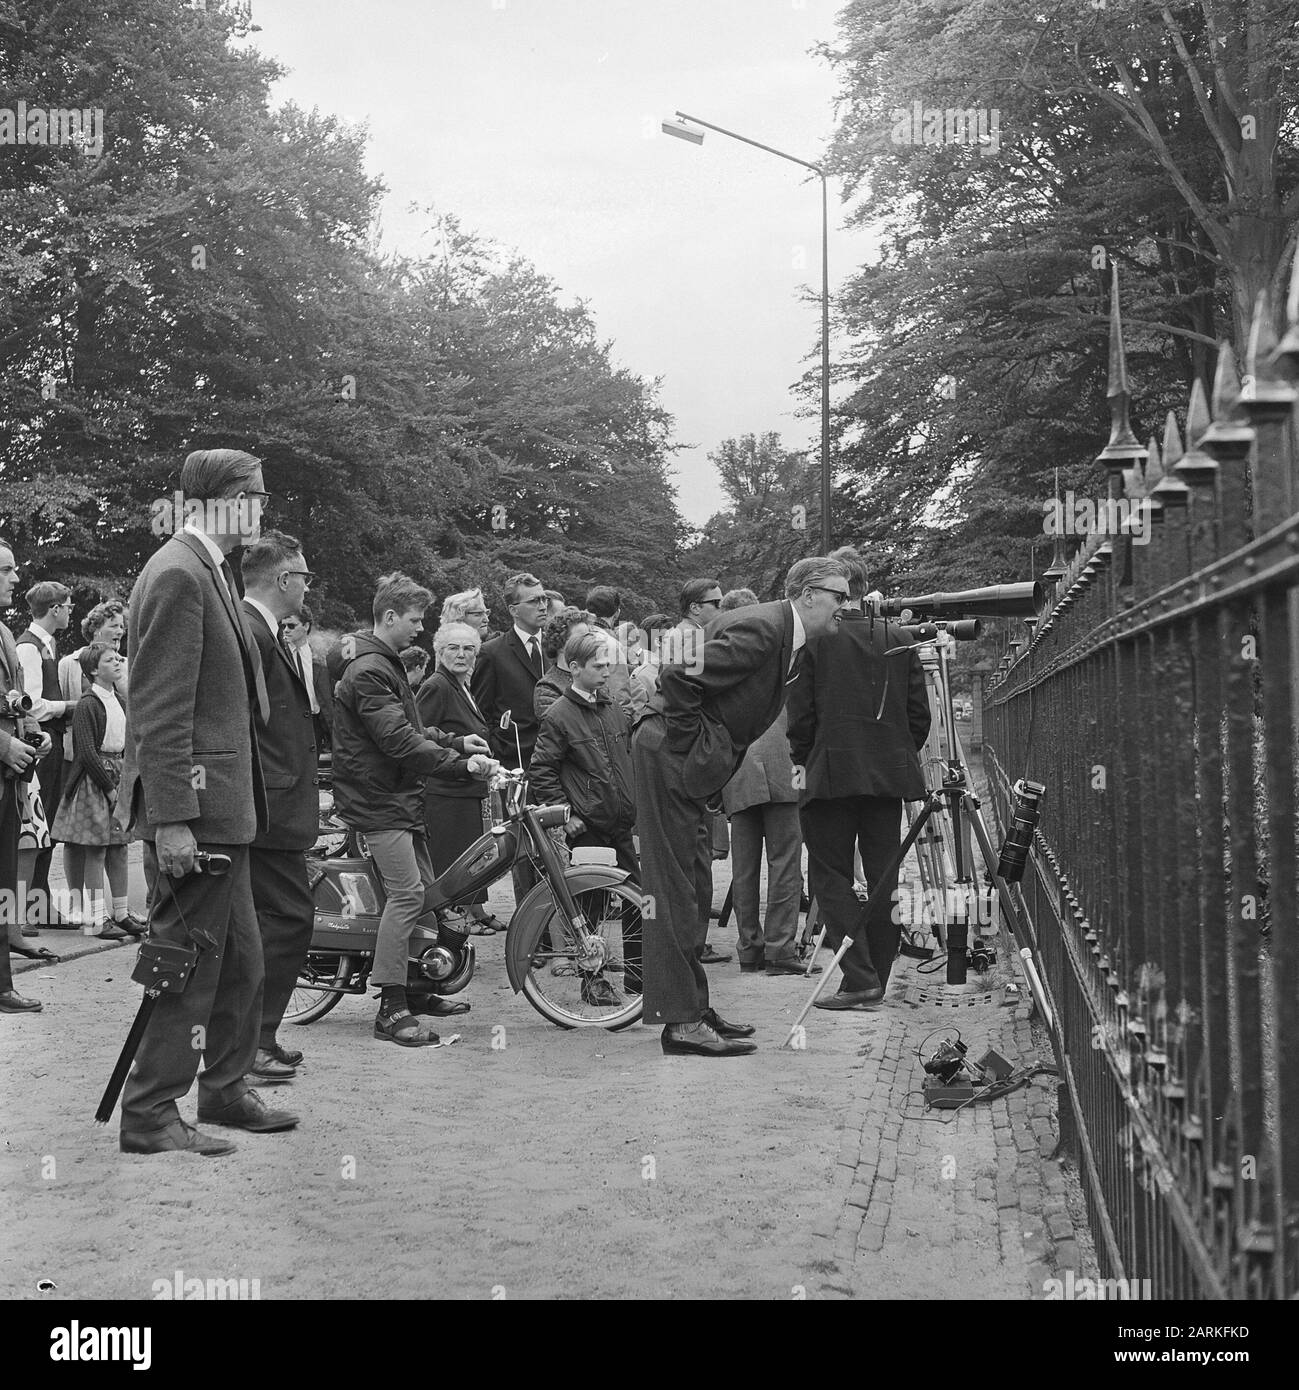 Occupato intorno al fidanzamento, folla di fronte al palazzo Soestdijk foglio guardato attraverso le lenti teleobiettivo dei fotografi Data: 27 giugno 1965 Parole Chiave: Fotographics, Fidanzamento Nome dell'istituzione: Palace Soestdijk Foto Stock